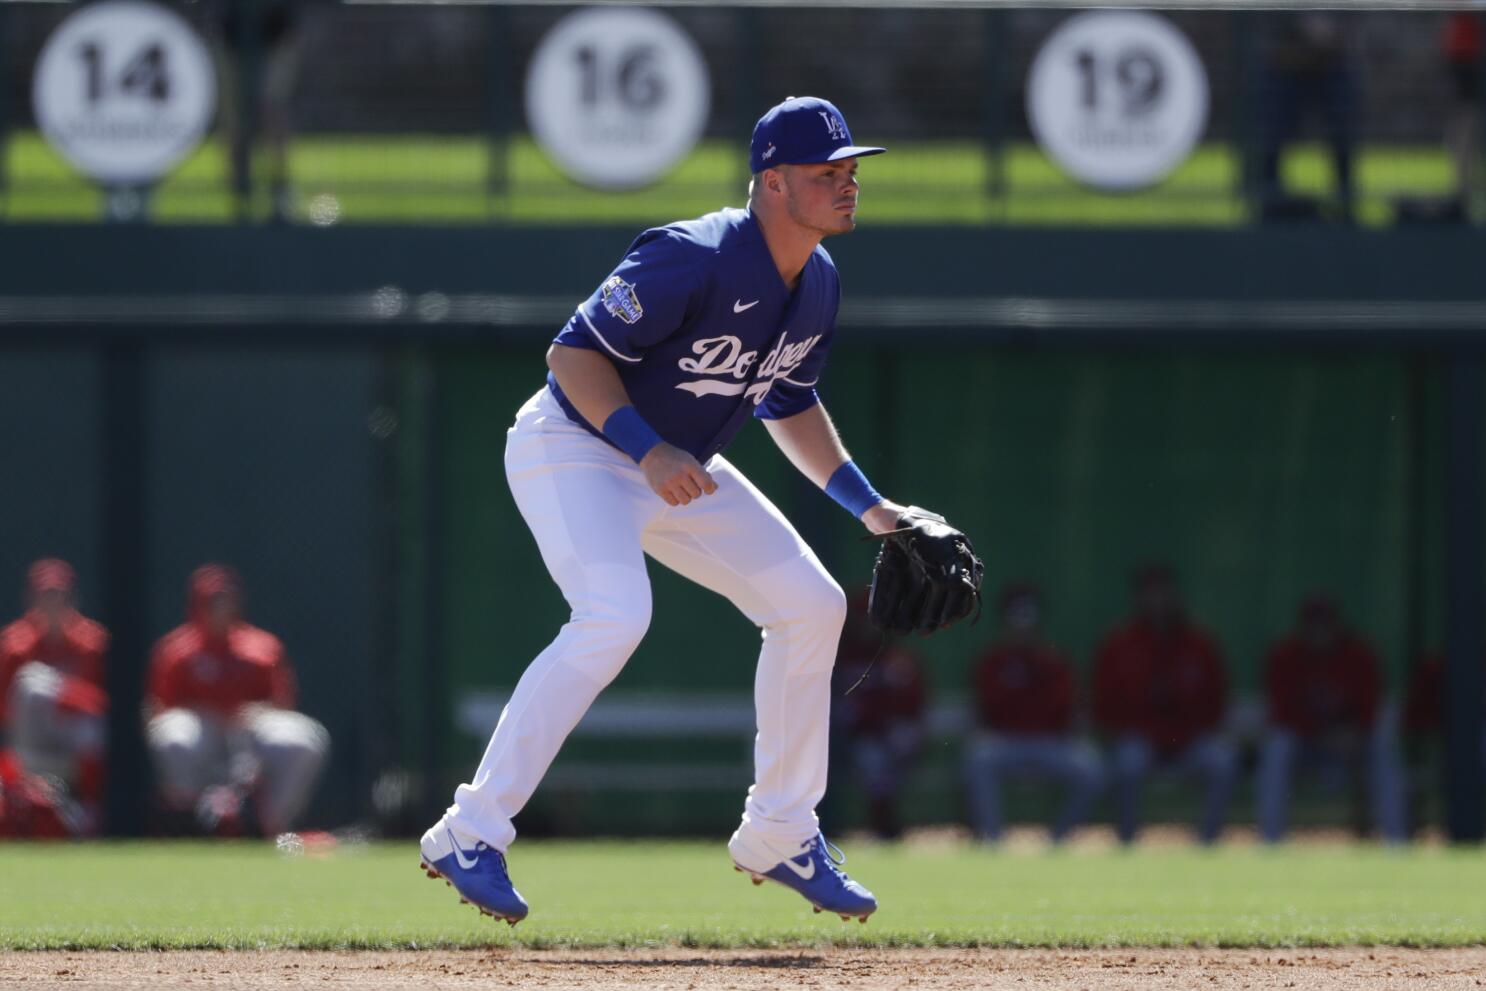 Dodgers @ Rangers August 29, 2020: Lance Lynn faces LA two days